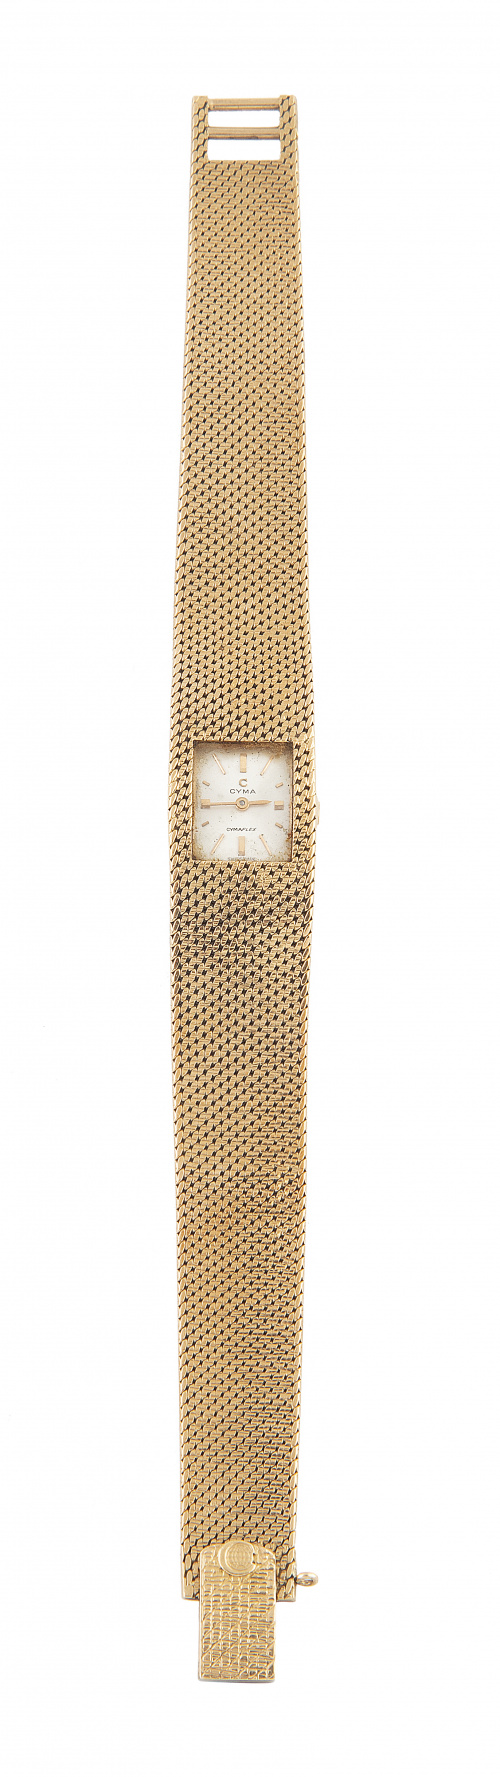 Reloj OMEGA de señora años 60 en oro de 18K con pulsera de 